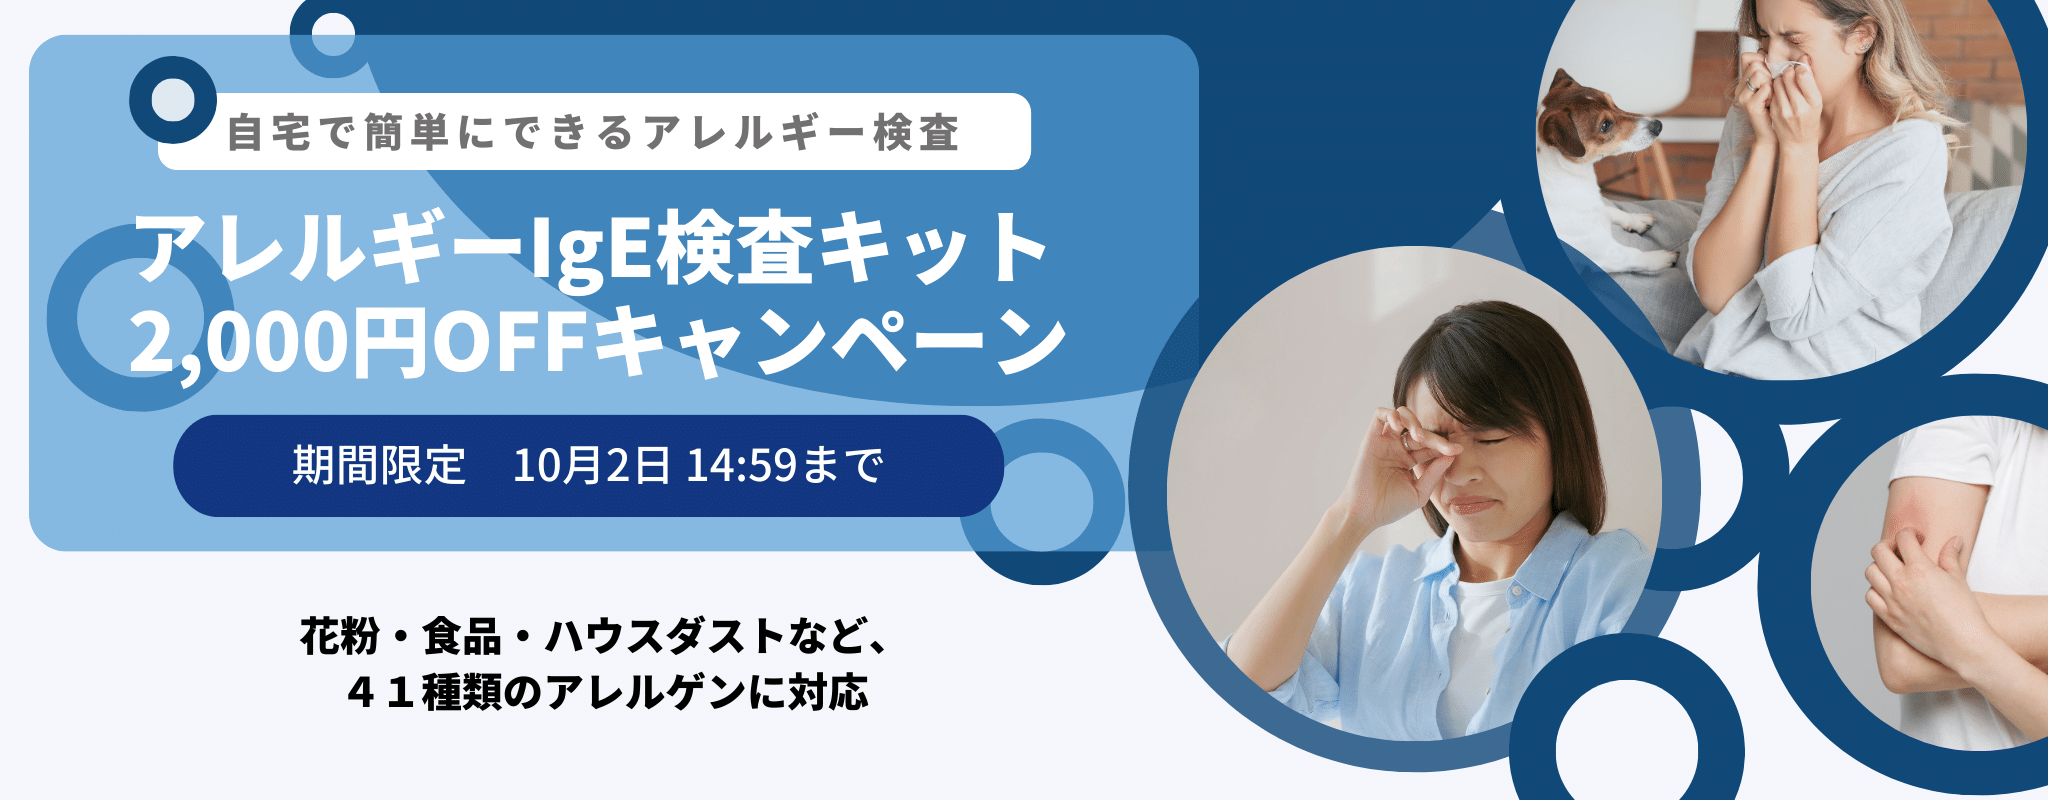 【期間限定2,000円OFF】アレルギー検査キット